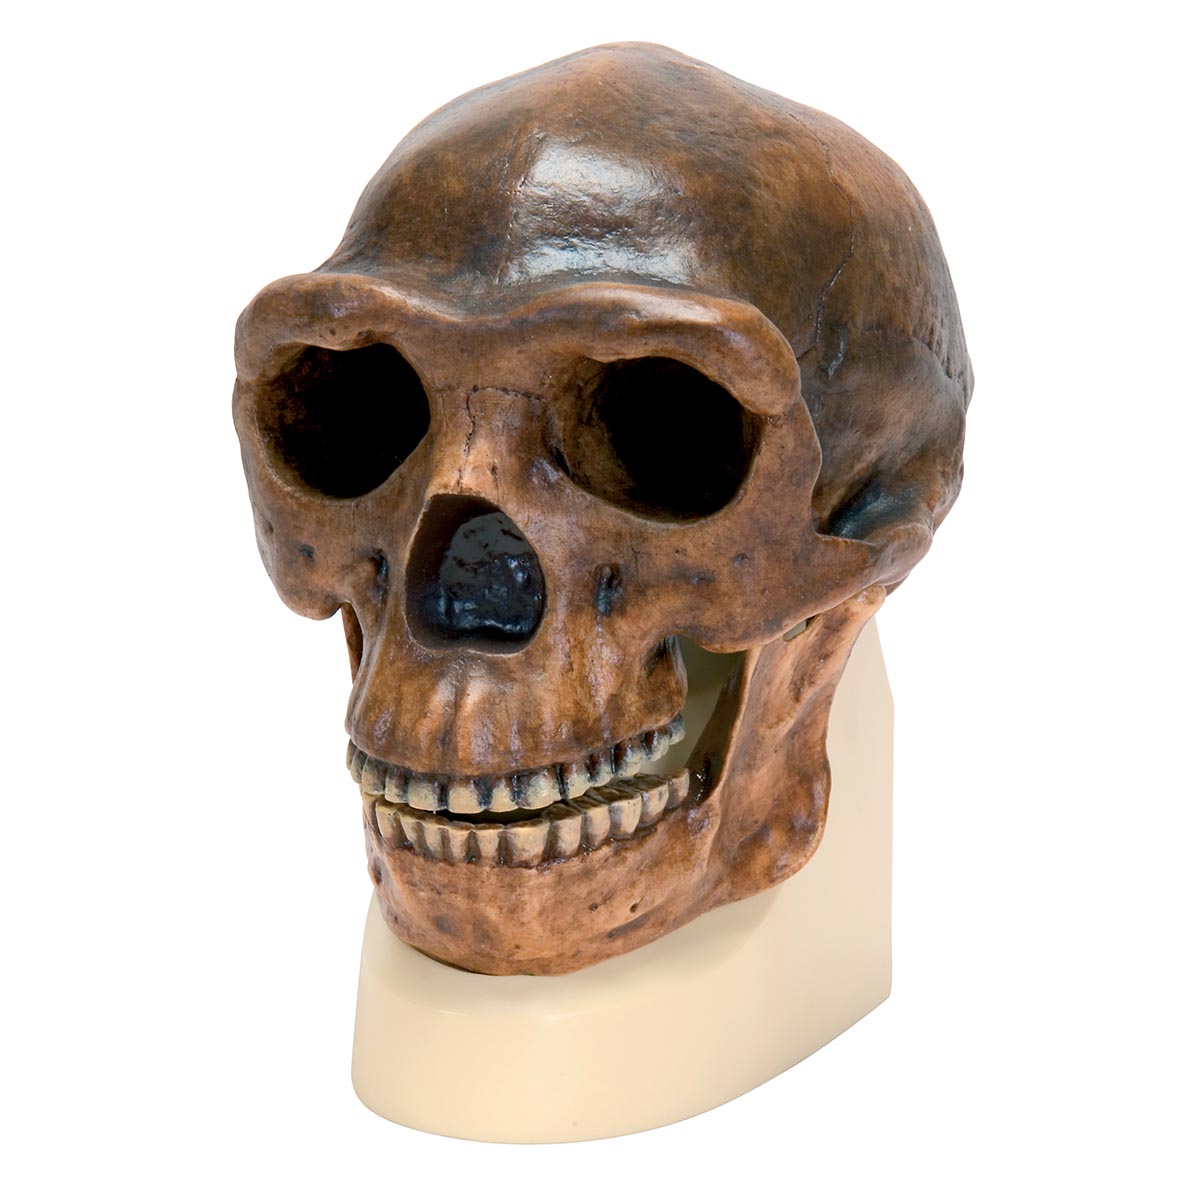 Schädelreplikat Homo erectus pekinensis (Weidenreich, 1940), Bestellnummer 1001293, VP750/1, 3B Scientific